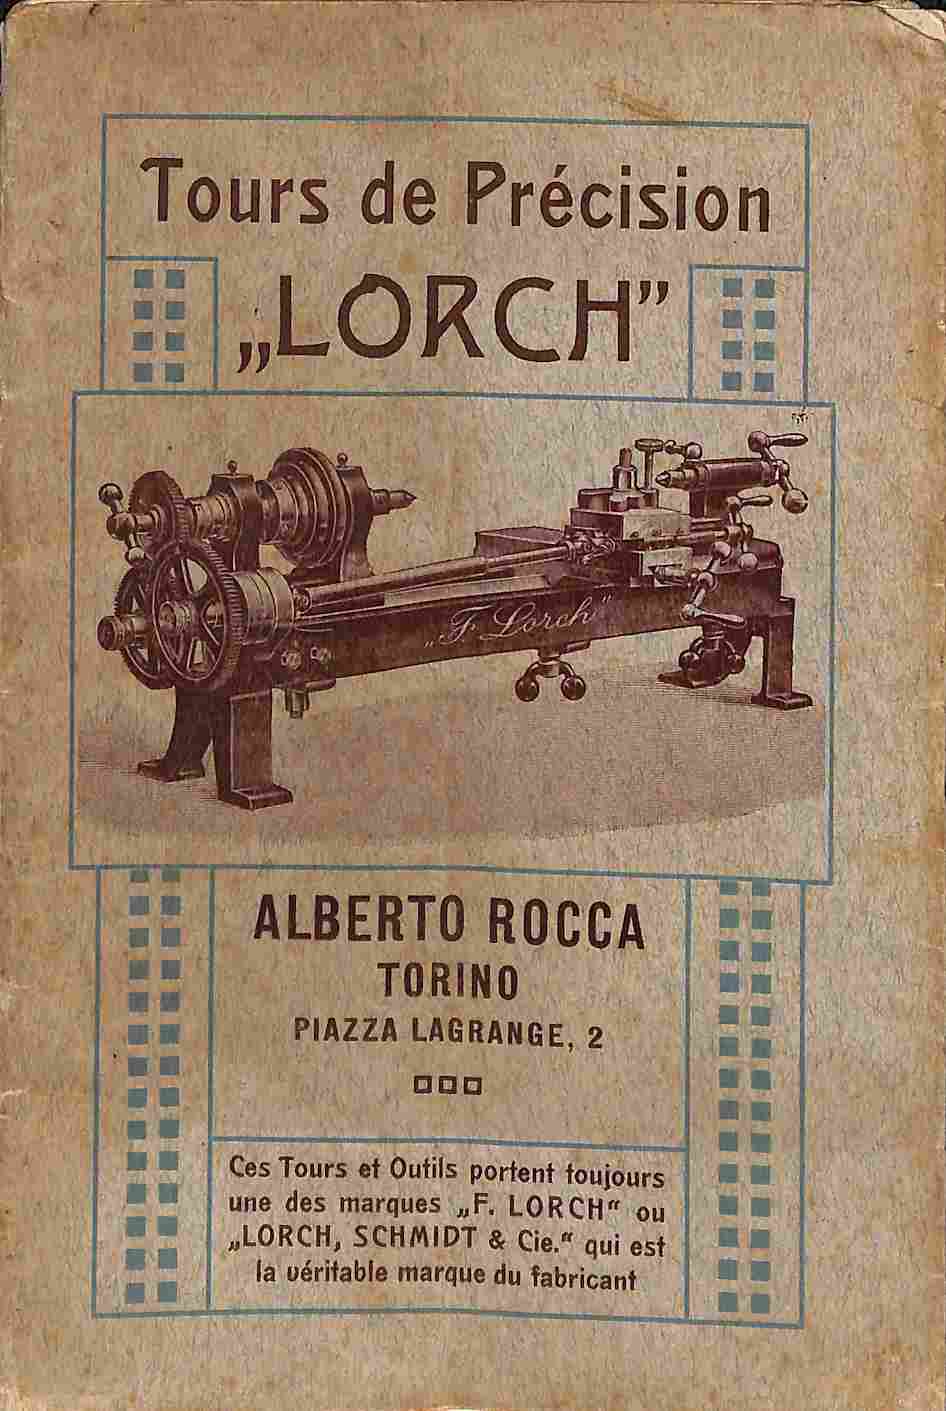 Tarif de tours de precision Lorch